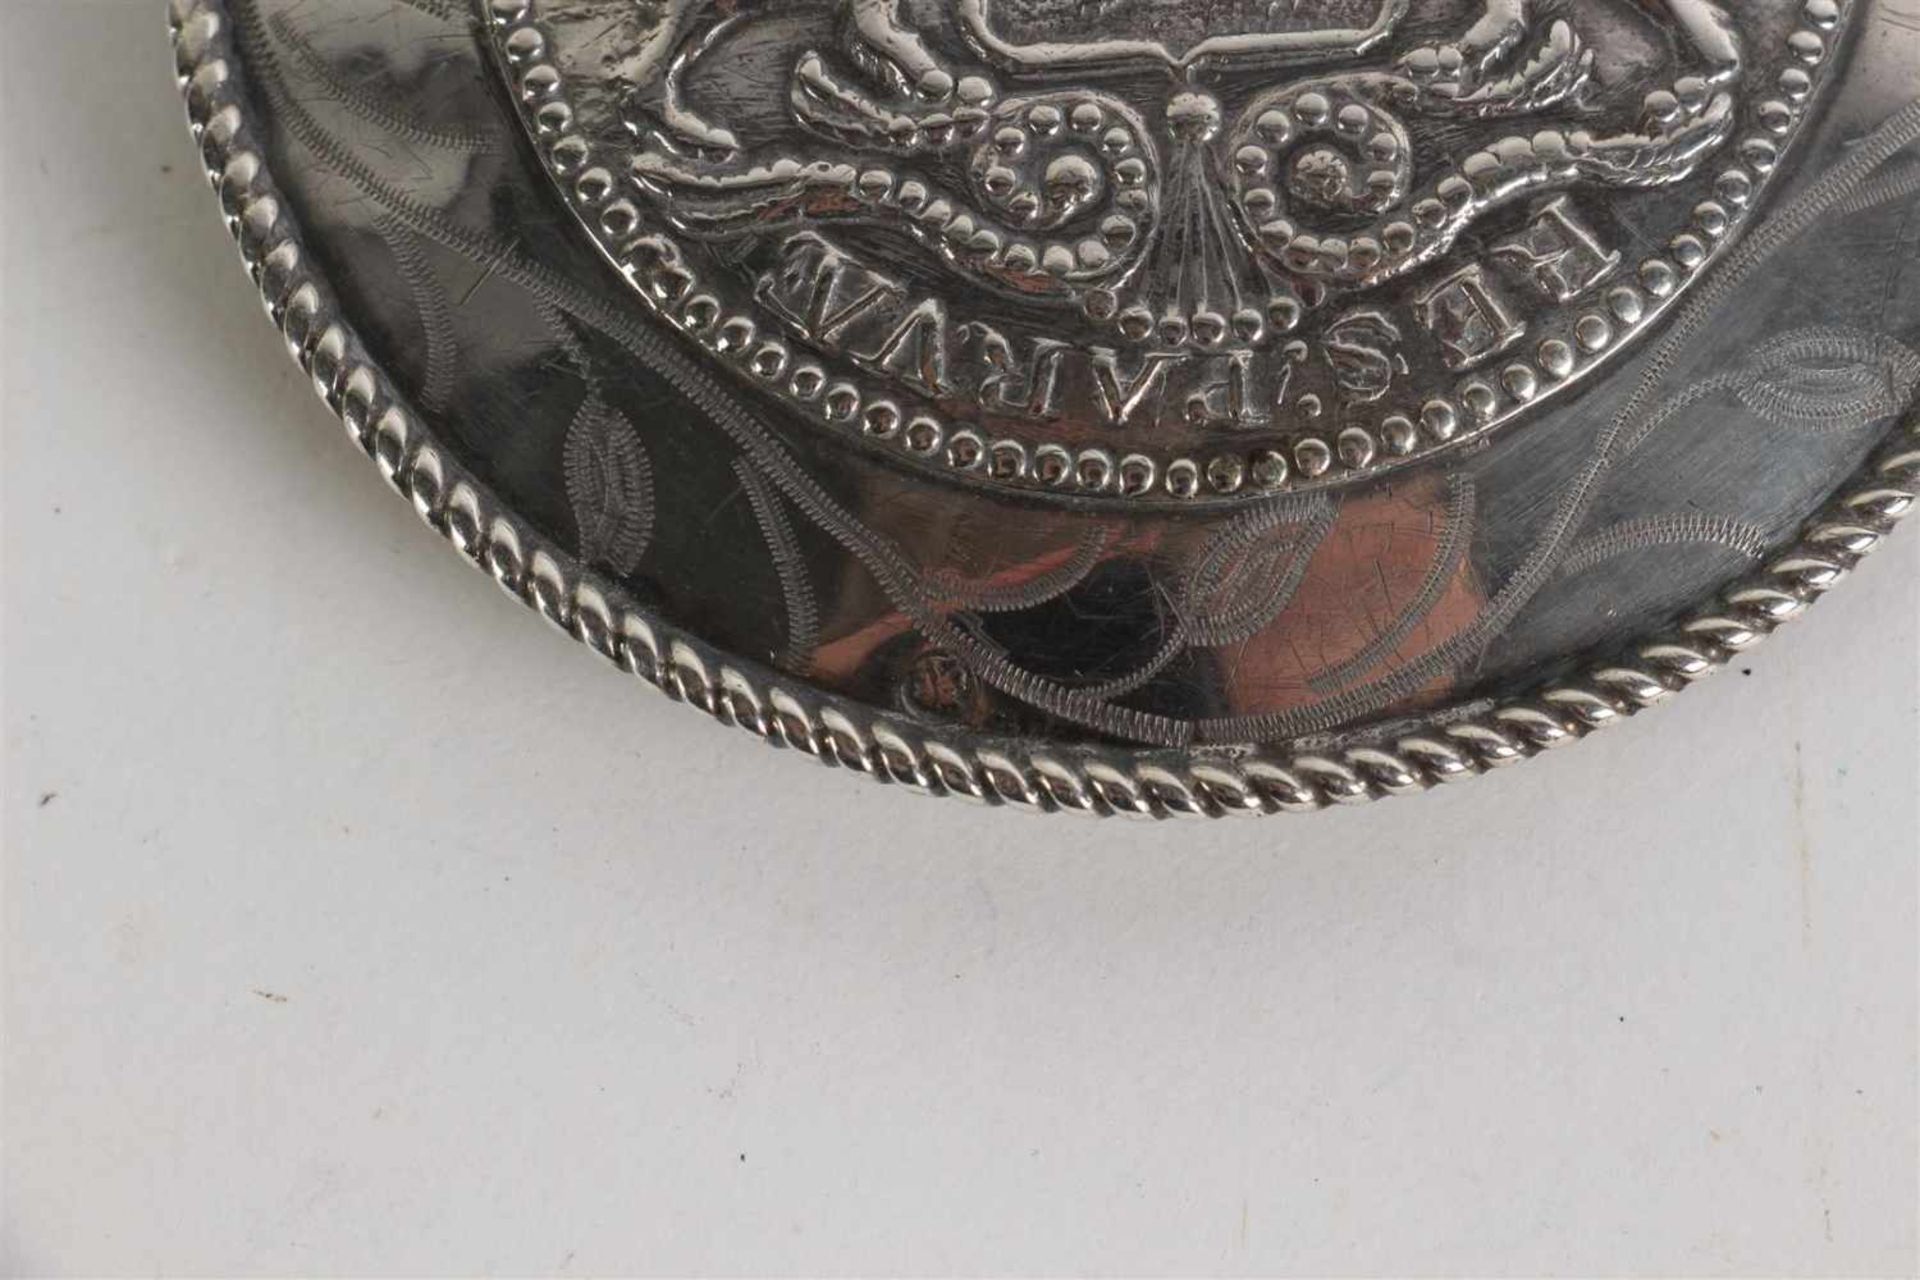 Stel zilveren broekstukken van de Walcherse dracht. D: 8.5 cm. - Bild 5 aus 5